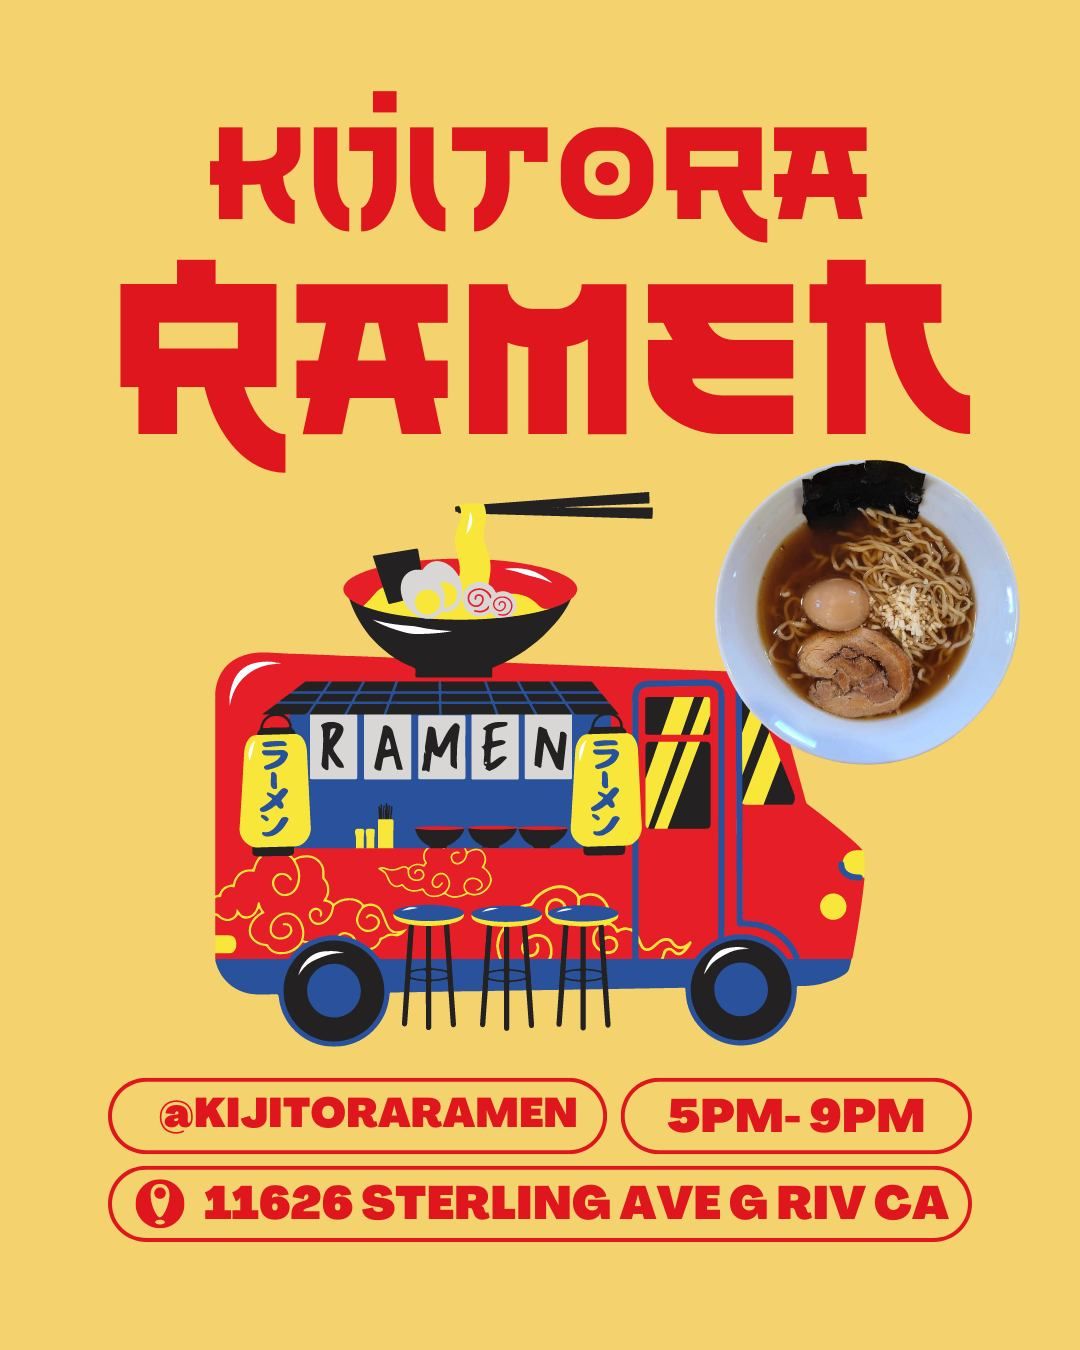 Food Truck - Kijitora Ramen